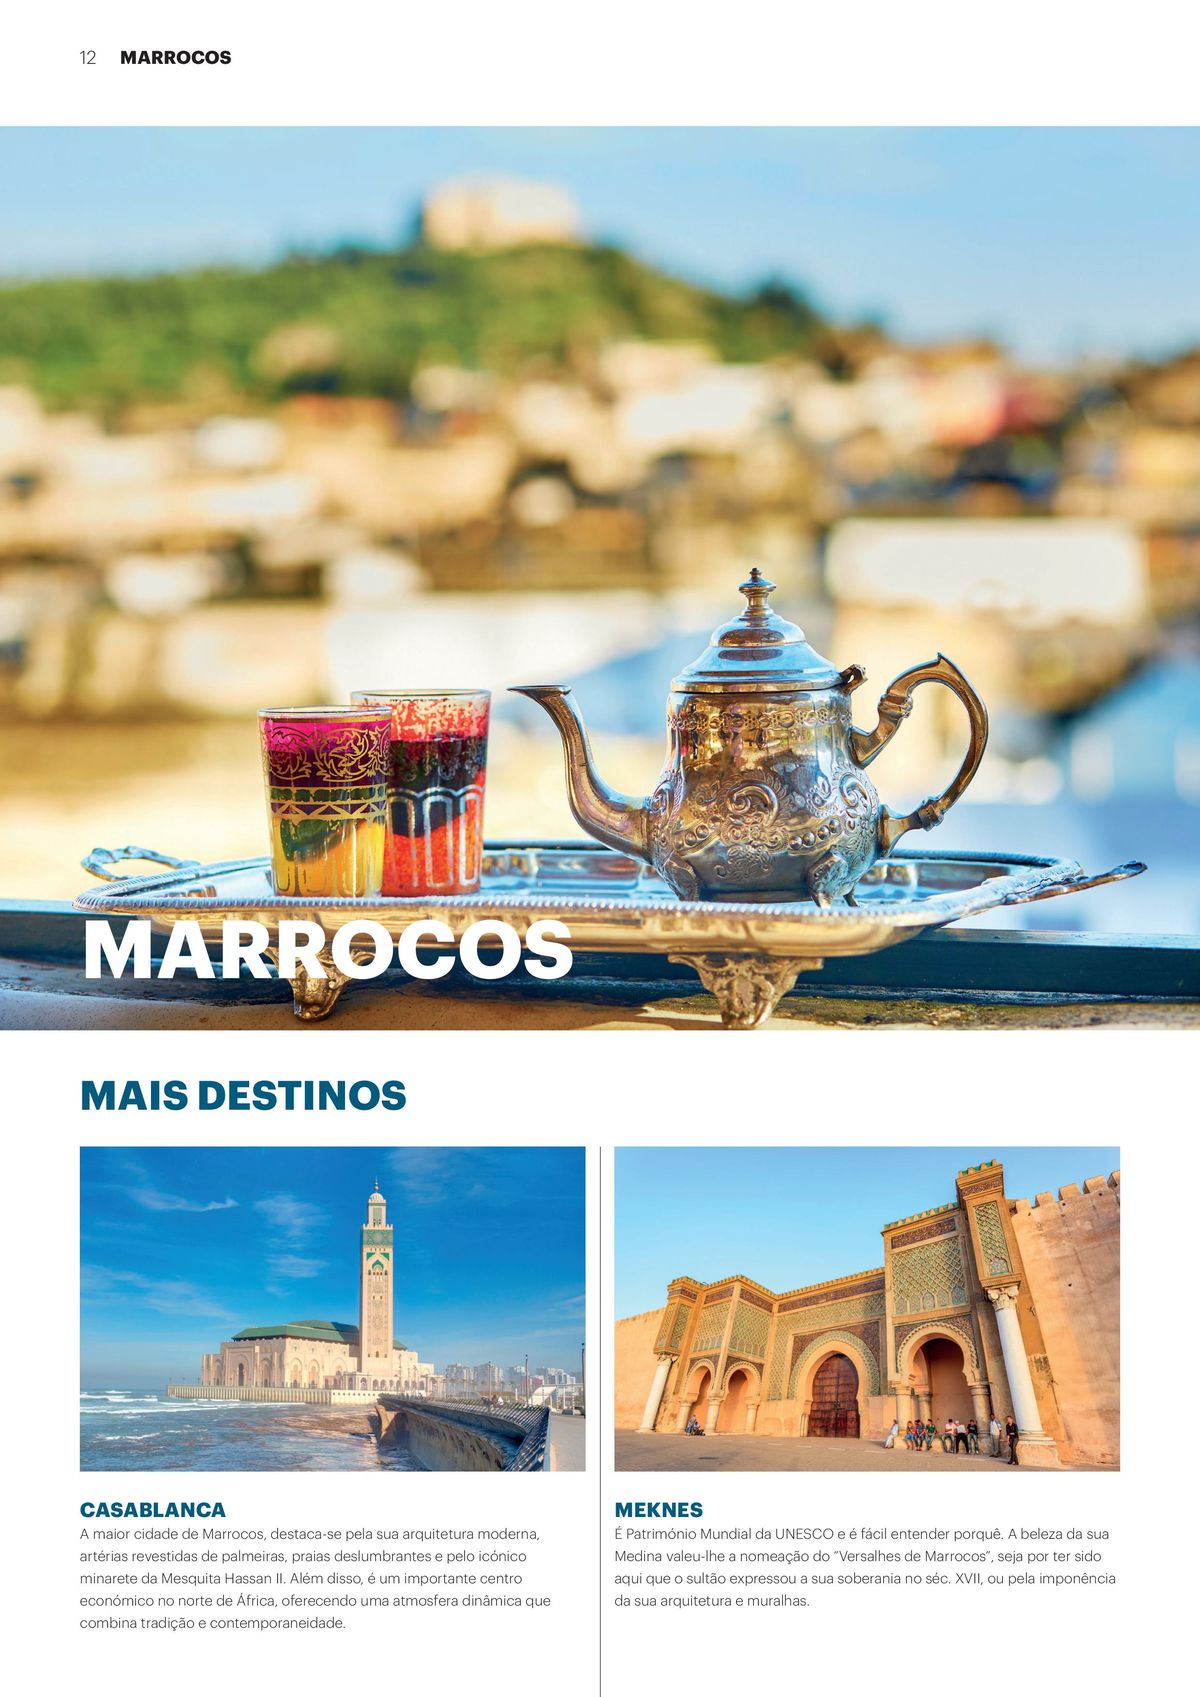 Viagem a Casablanca e Meknes em Marrocos